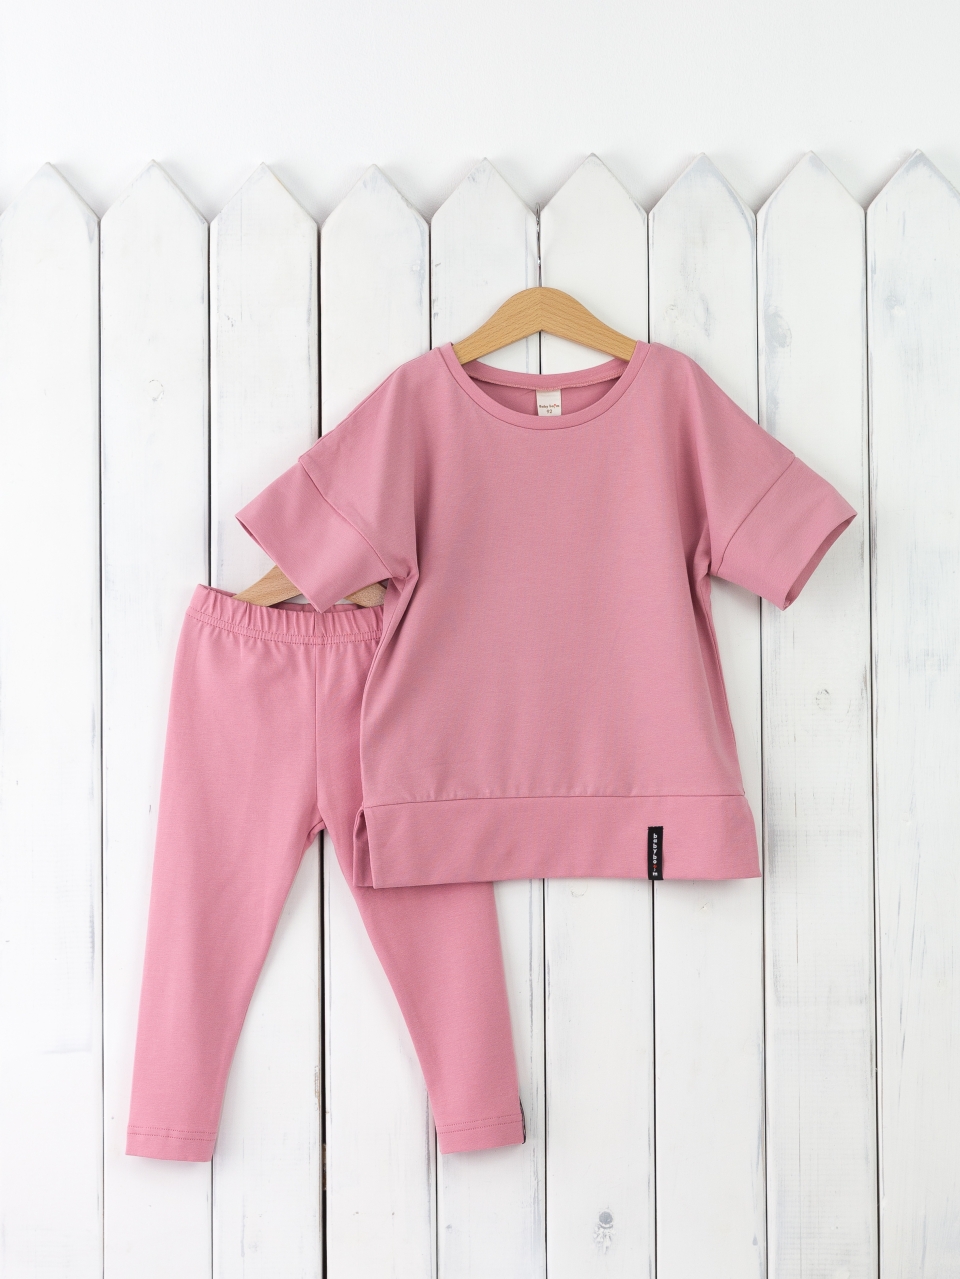 КД352/11-К Комплект для девочки р.110 футболка+легинсы/розовый зефир Бэби Бум - Саратов 